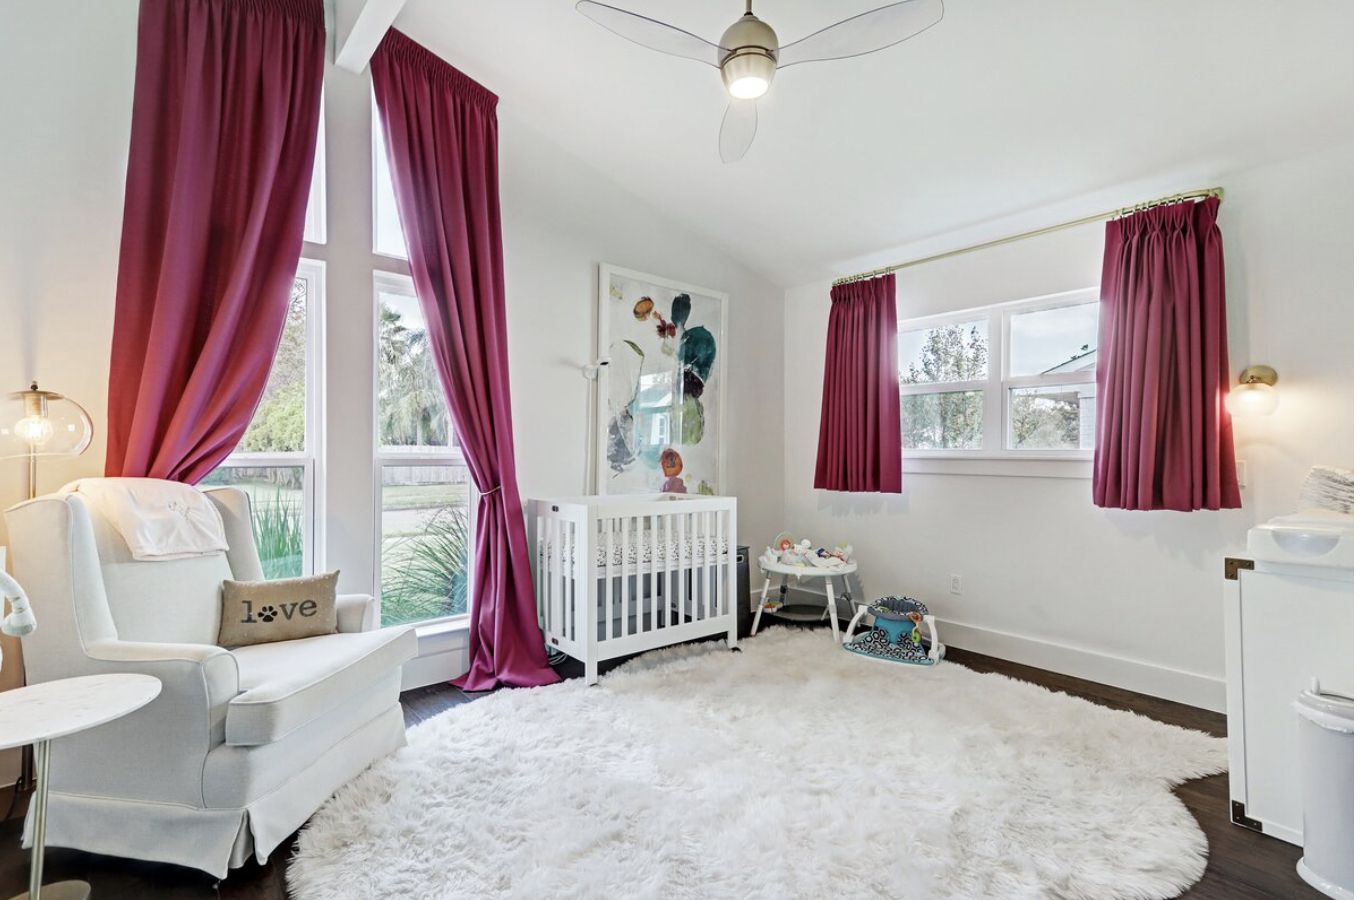 quarto de bebê com cortinas longas e curtas cor-de-rosa em um esquema de cores branco